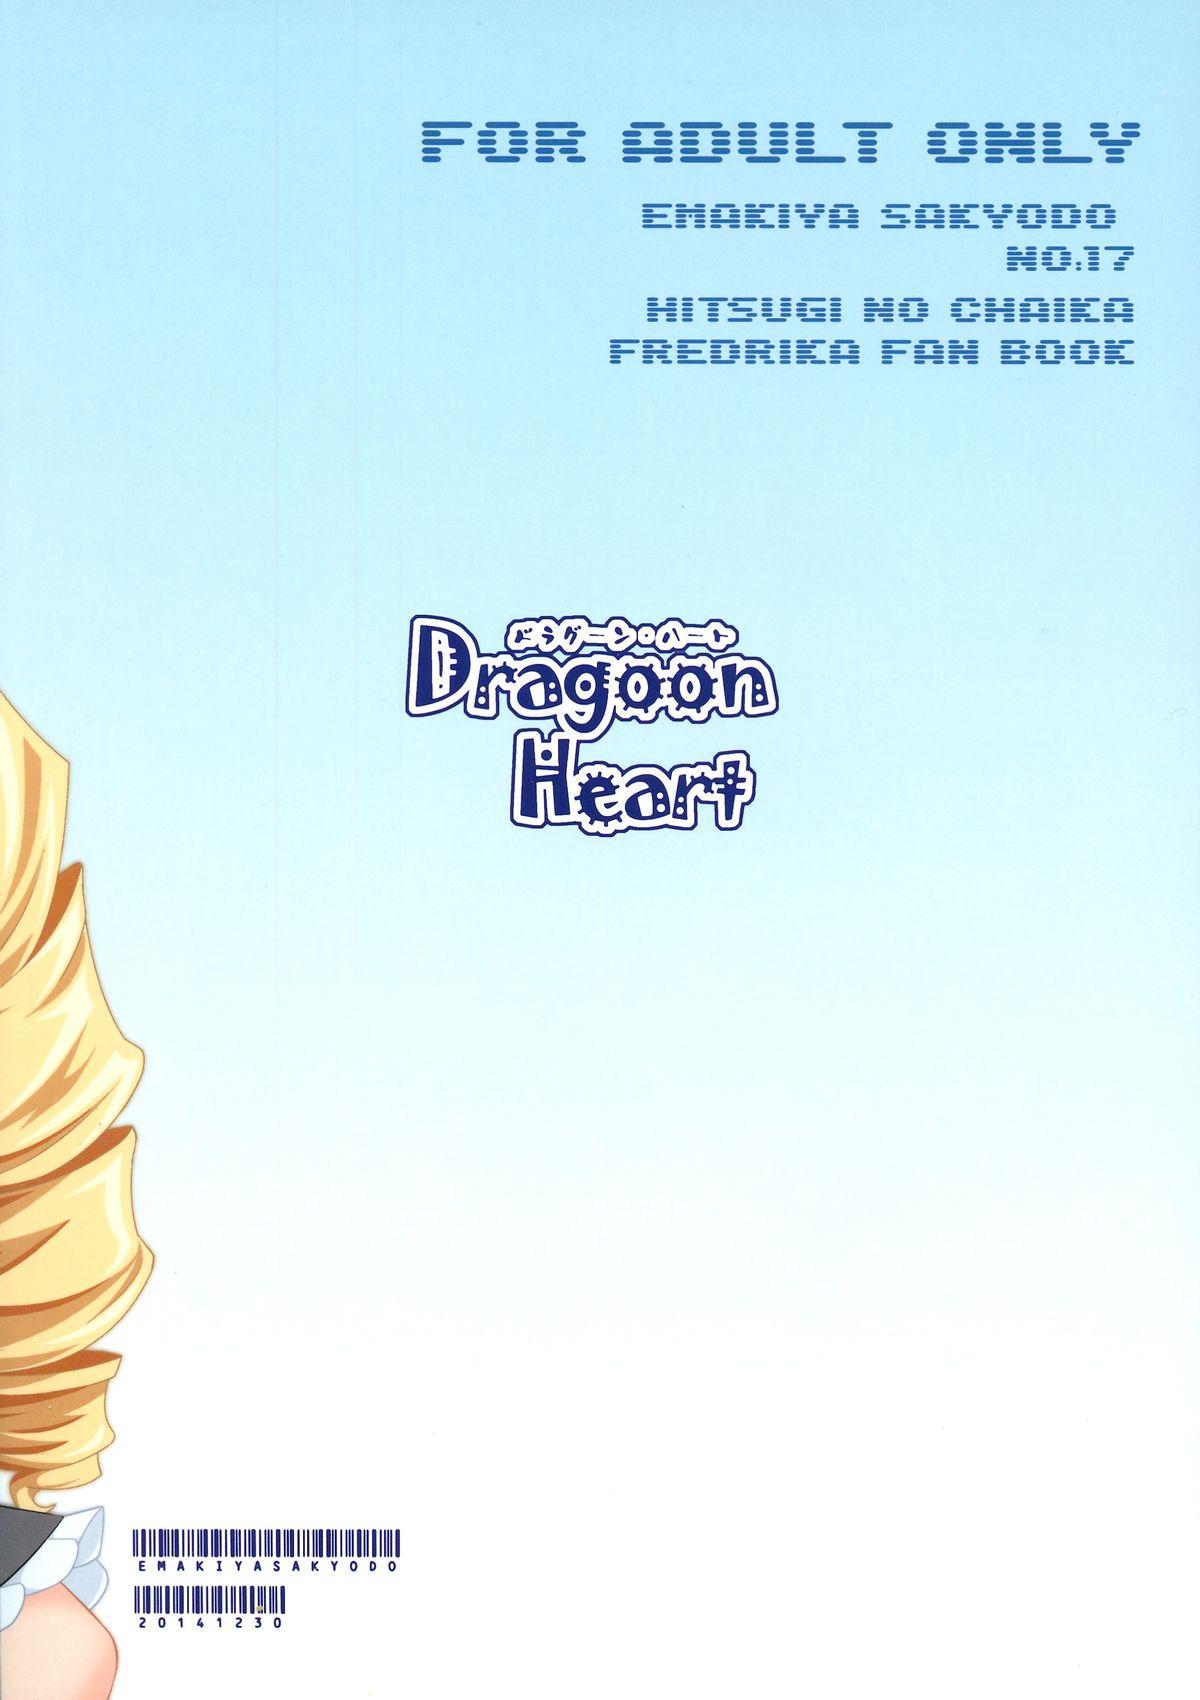 Khmer Dragoon Heart - Hitsugi no chaika Cojiendo - Page 2